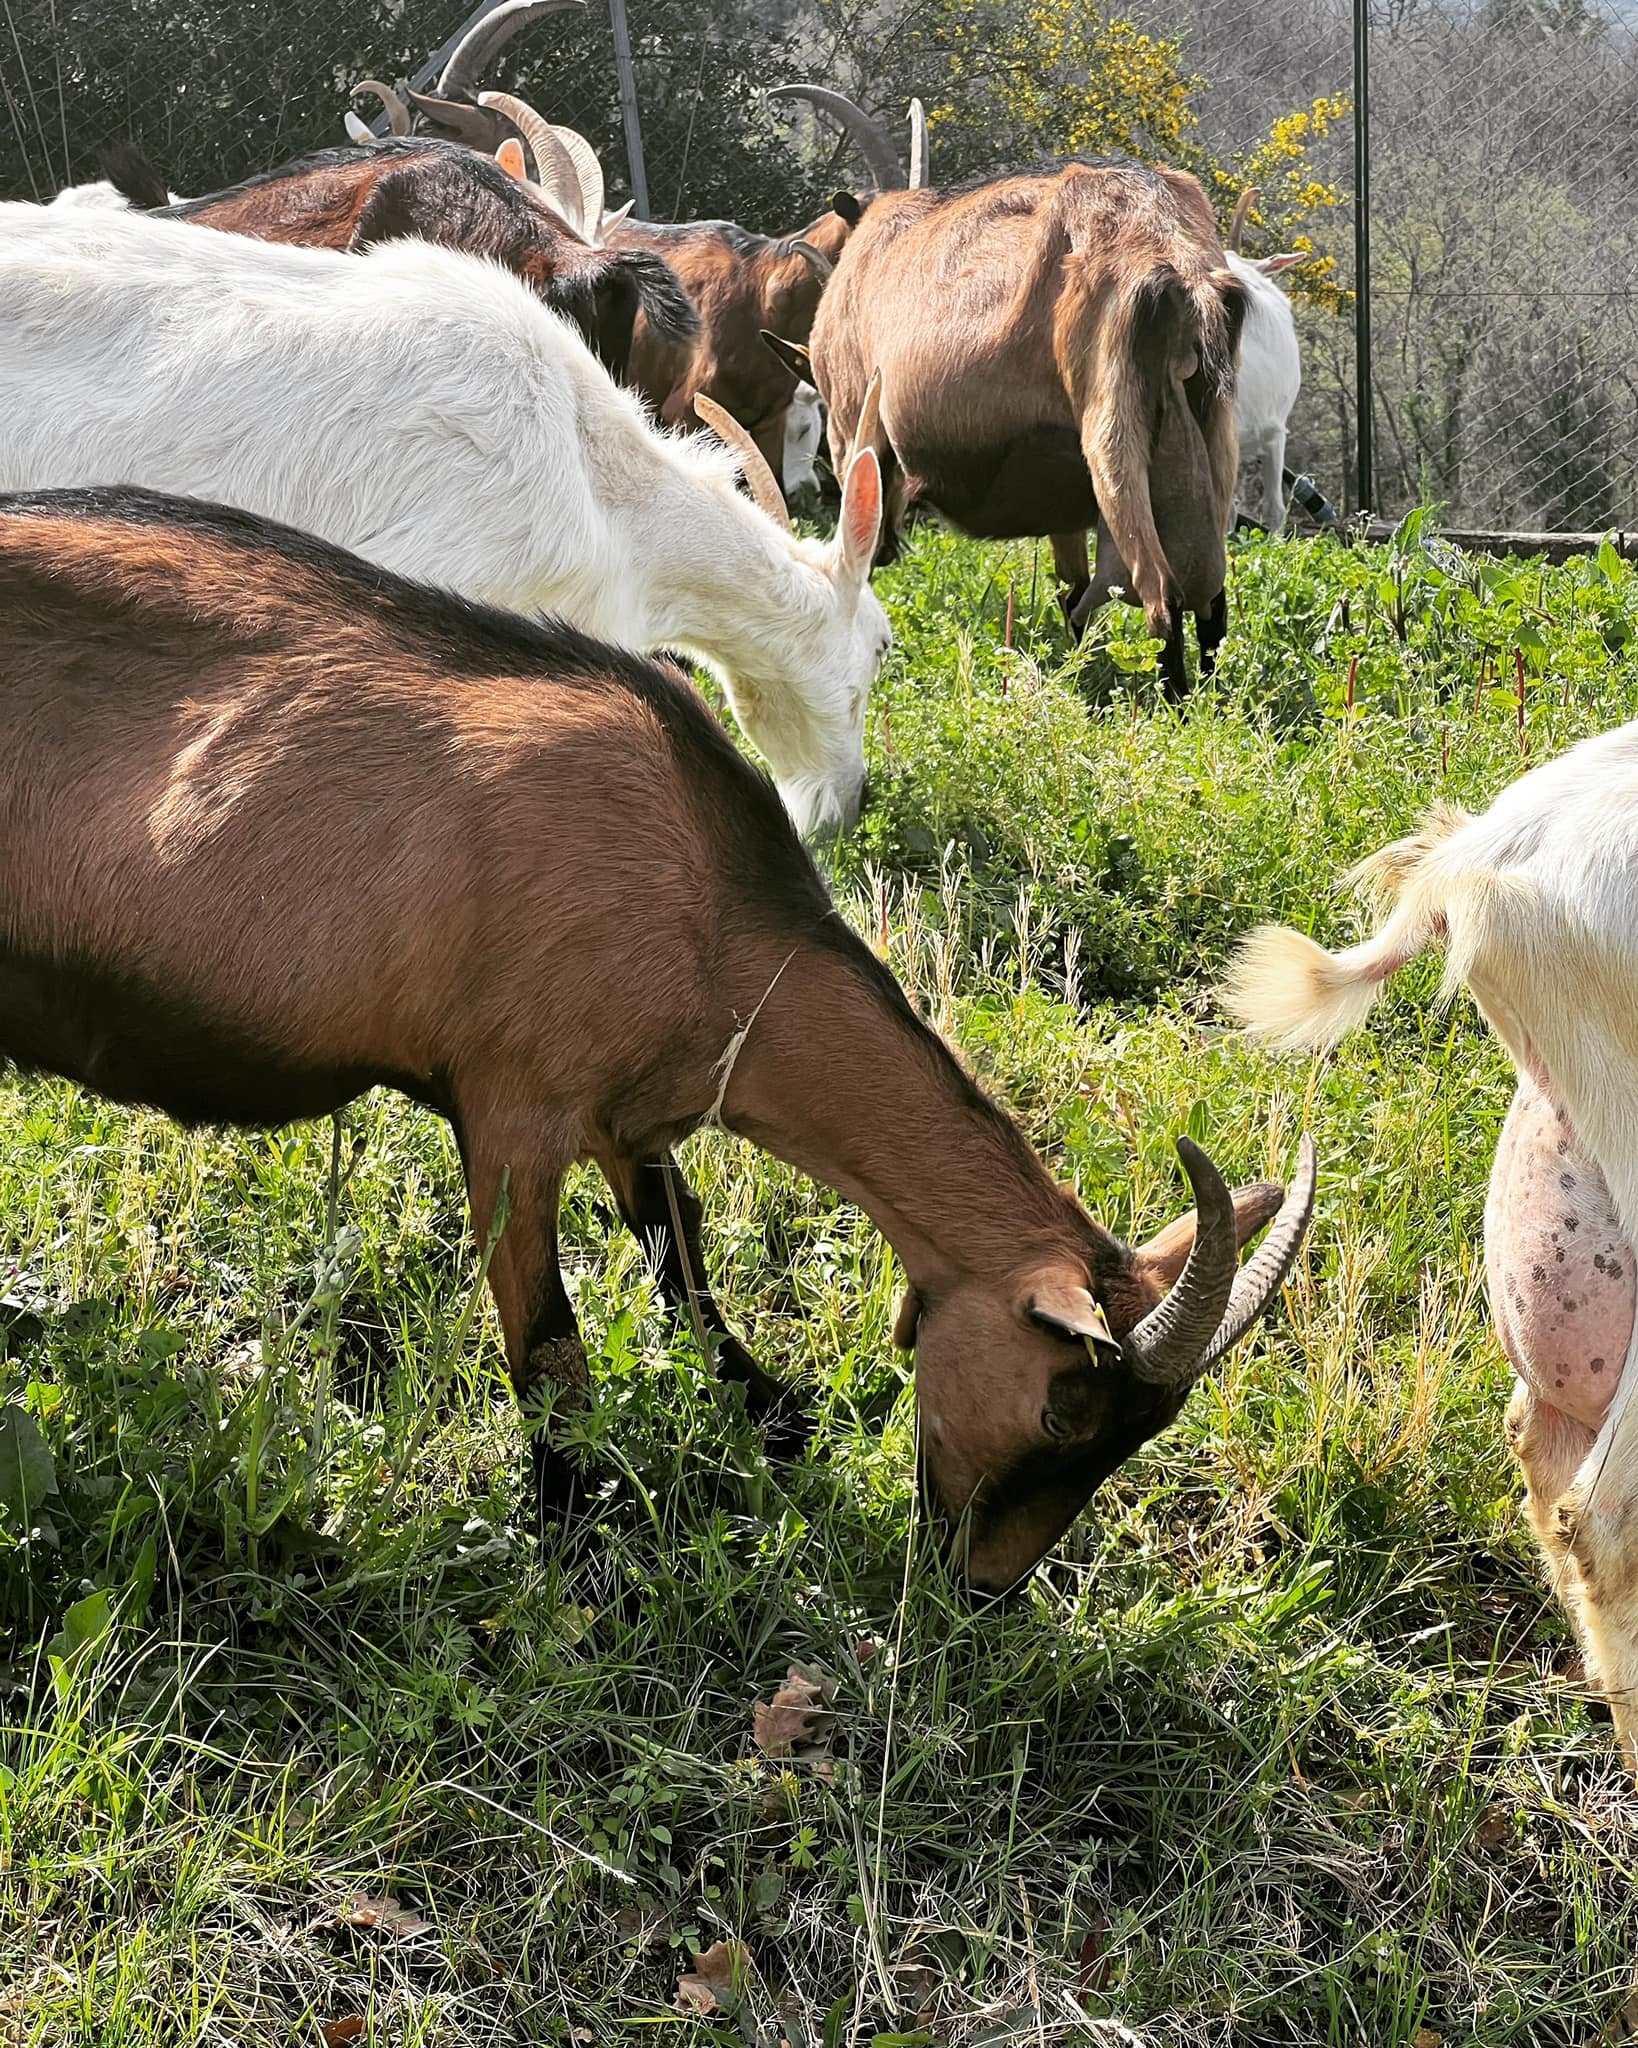 Caprini erbosi: dal Cilento prodotti innovativi caseari e cosmetici a base di latte di capra